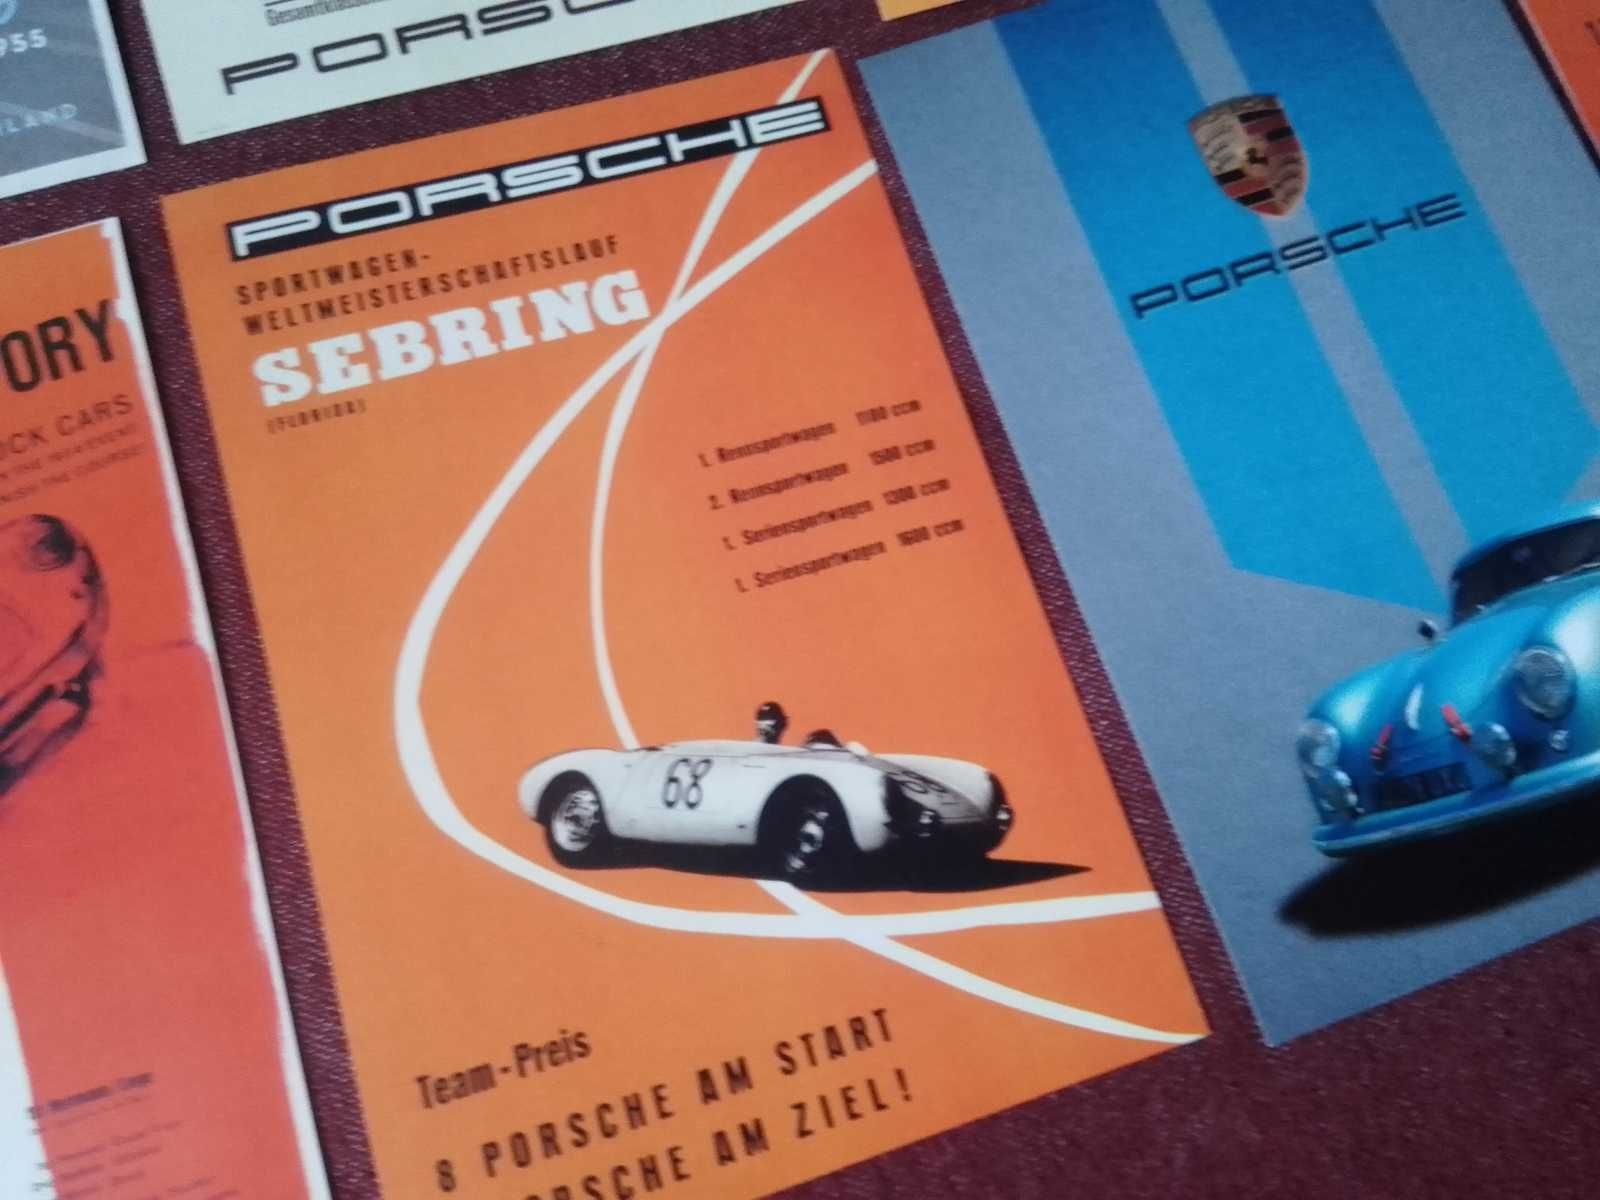 Stare samochody - Porsche  piękne plakaty do aranżacji wnętrza